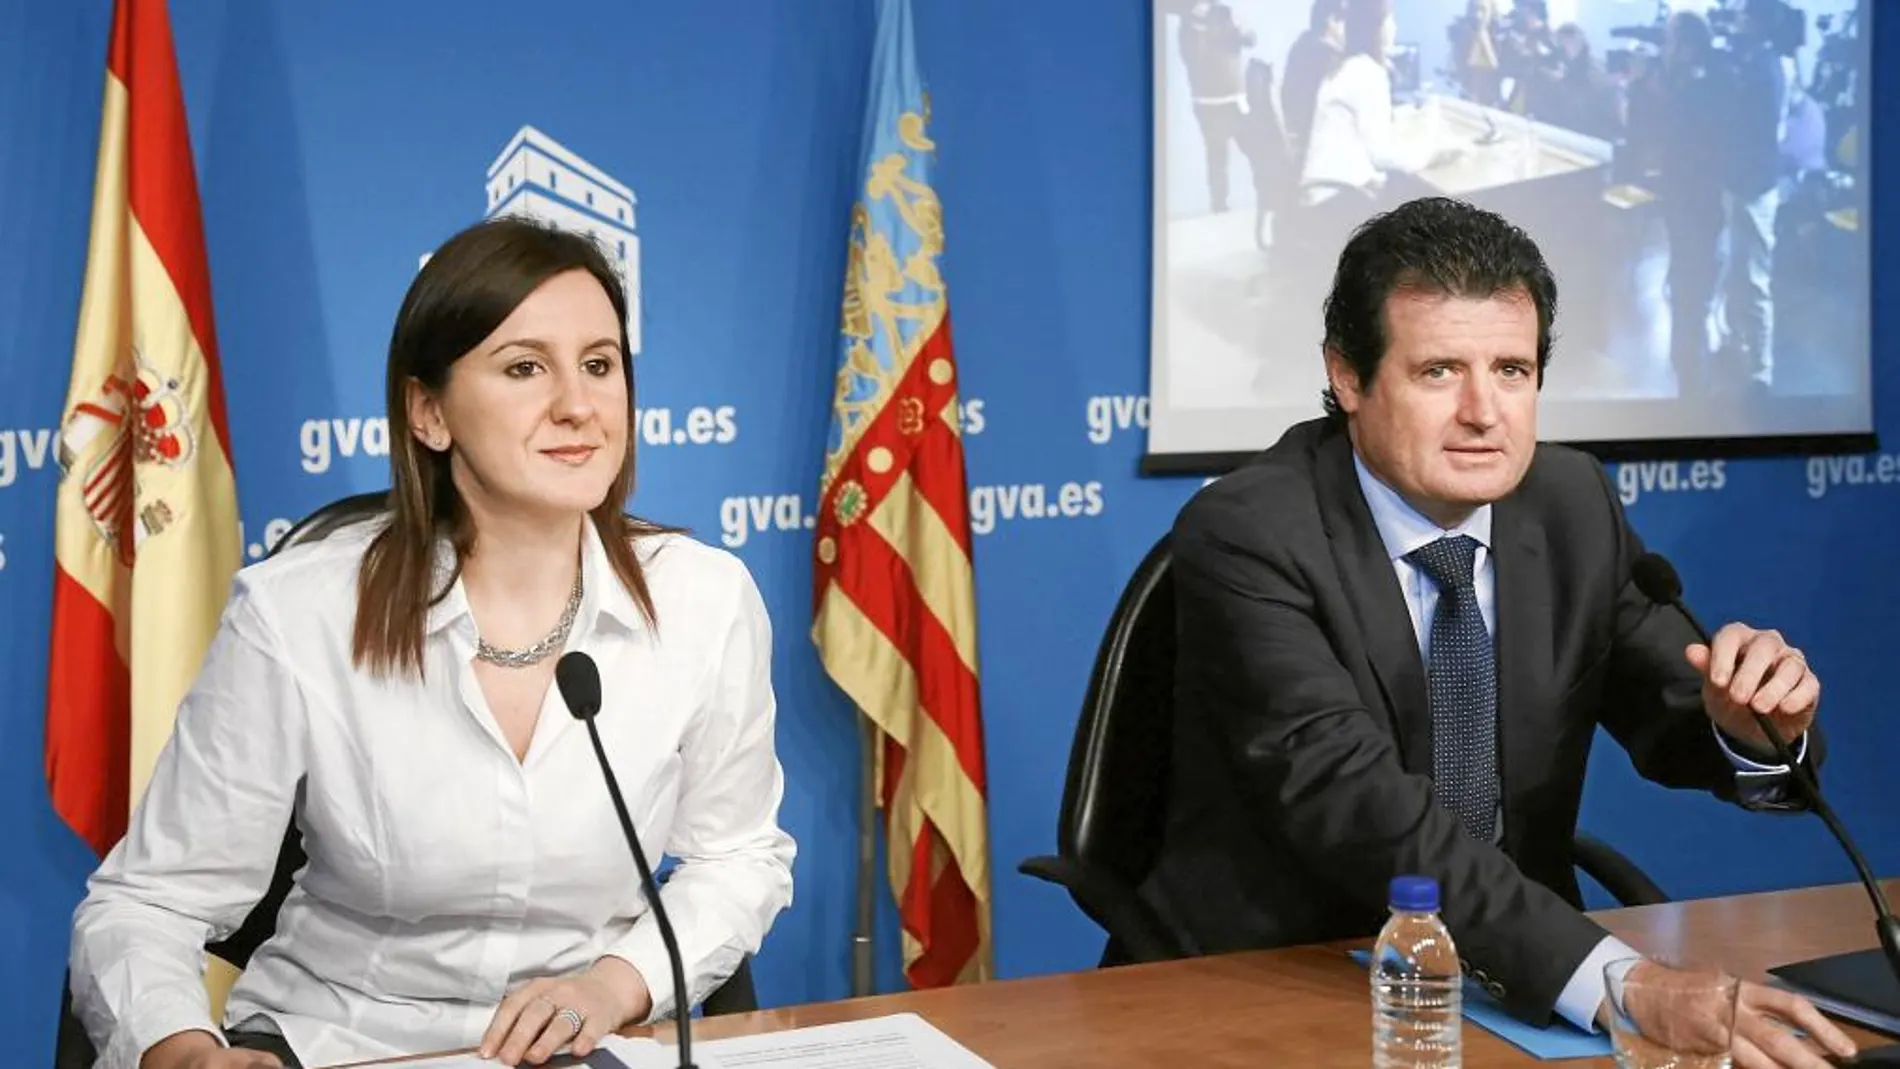 La consellera de Educación, Català, junto al vicepresidente Císcar